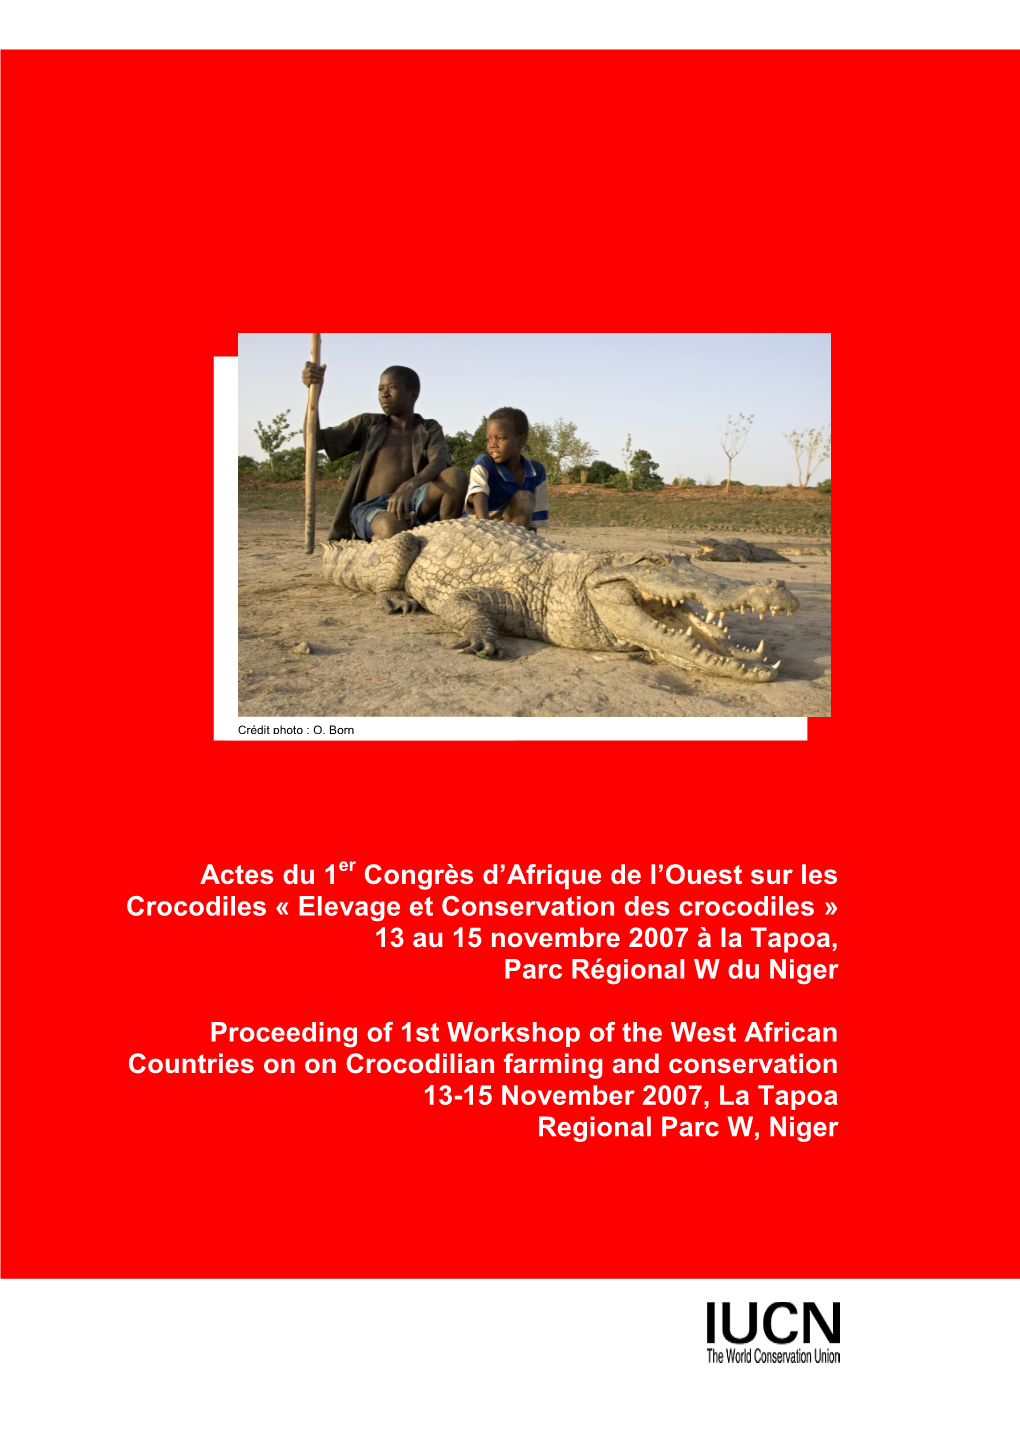 Elevage Et Conservation Des Crocodiles » 13 Au 15 Novembre 2007 À La Tapoa, Parc Régional W Du Niger